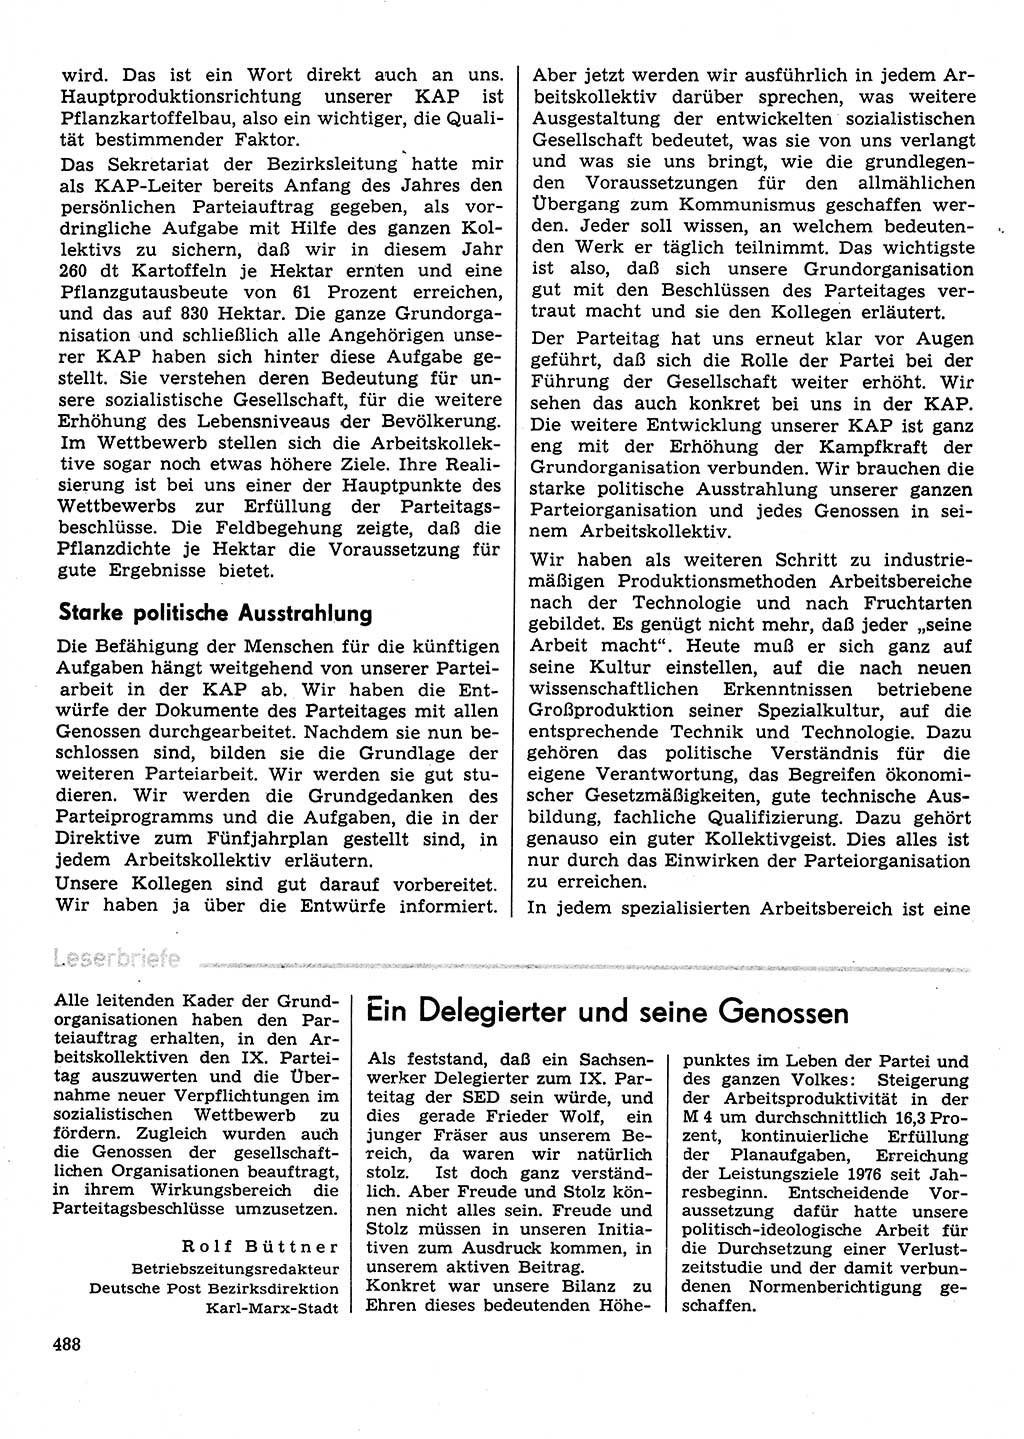 Neuer Weg (NW), Organ des Zentralkomitees (ZK) der SED (Sozialistische Einheitspartei Deutschlands) für Fragen des Parteilebens, 31. Jahrgang [Deutsche Demokratische Republik (DDR)] 1976, Seite 488 (NW ZK SED DDR 1976, S. 488)